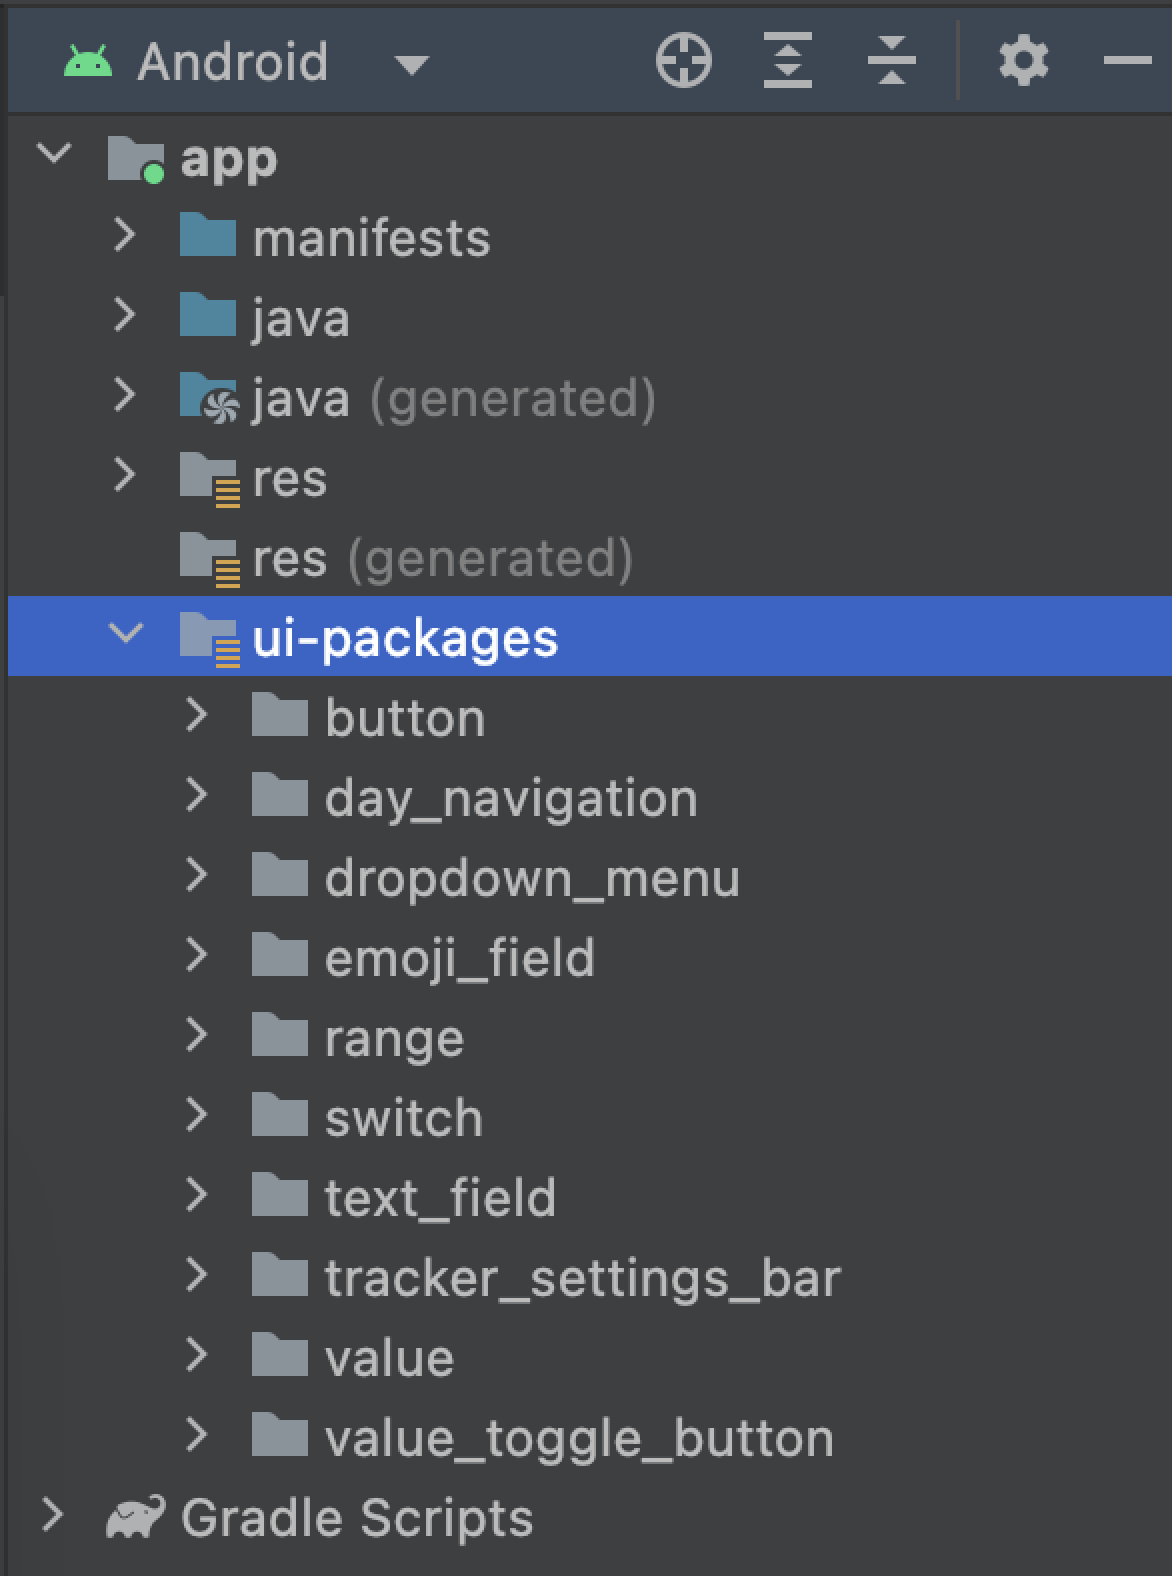 Folder ui-packages